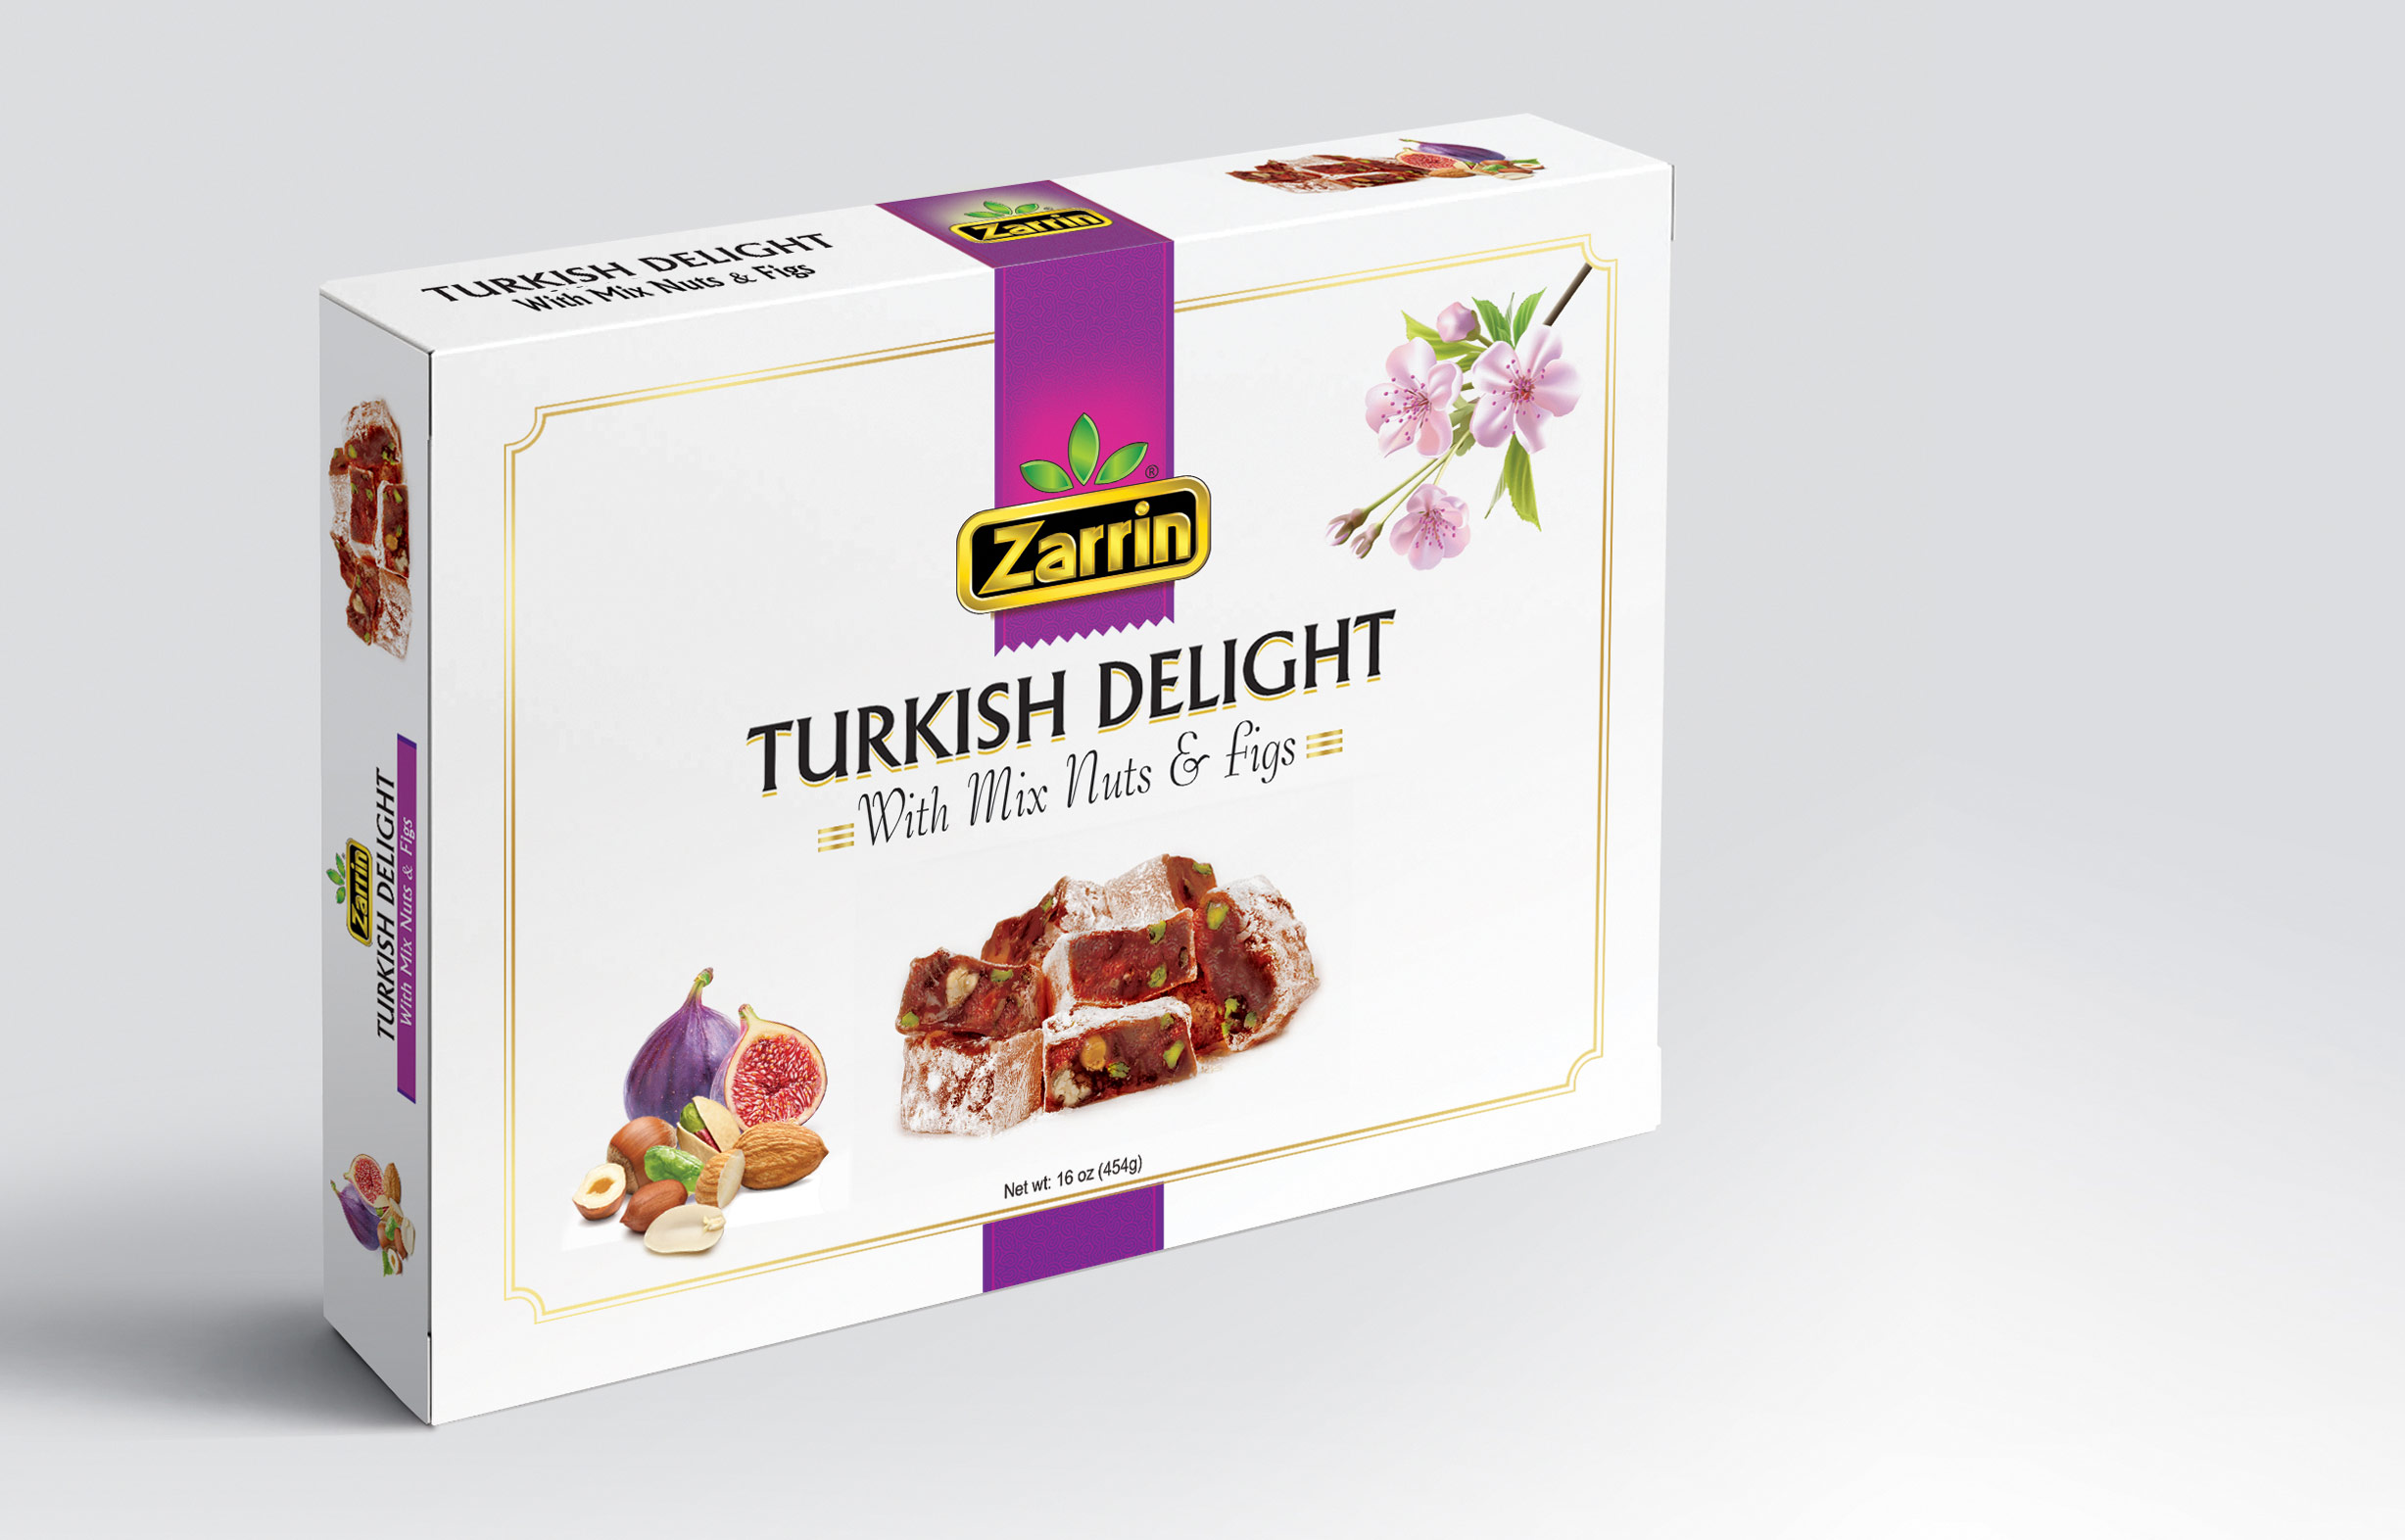 Zarrin Mix Nuts & Figs Turkish Delight 16 oz box.